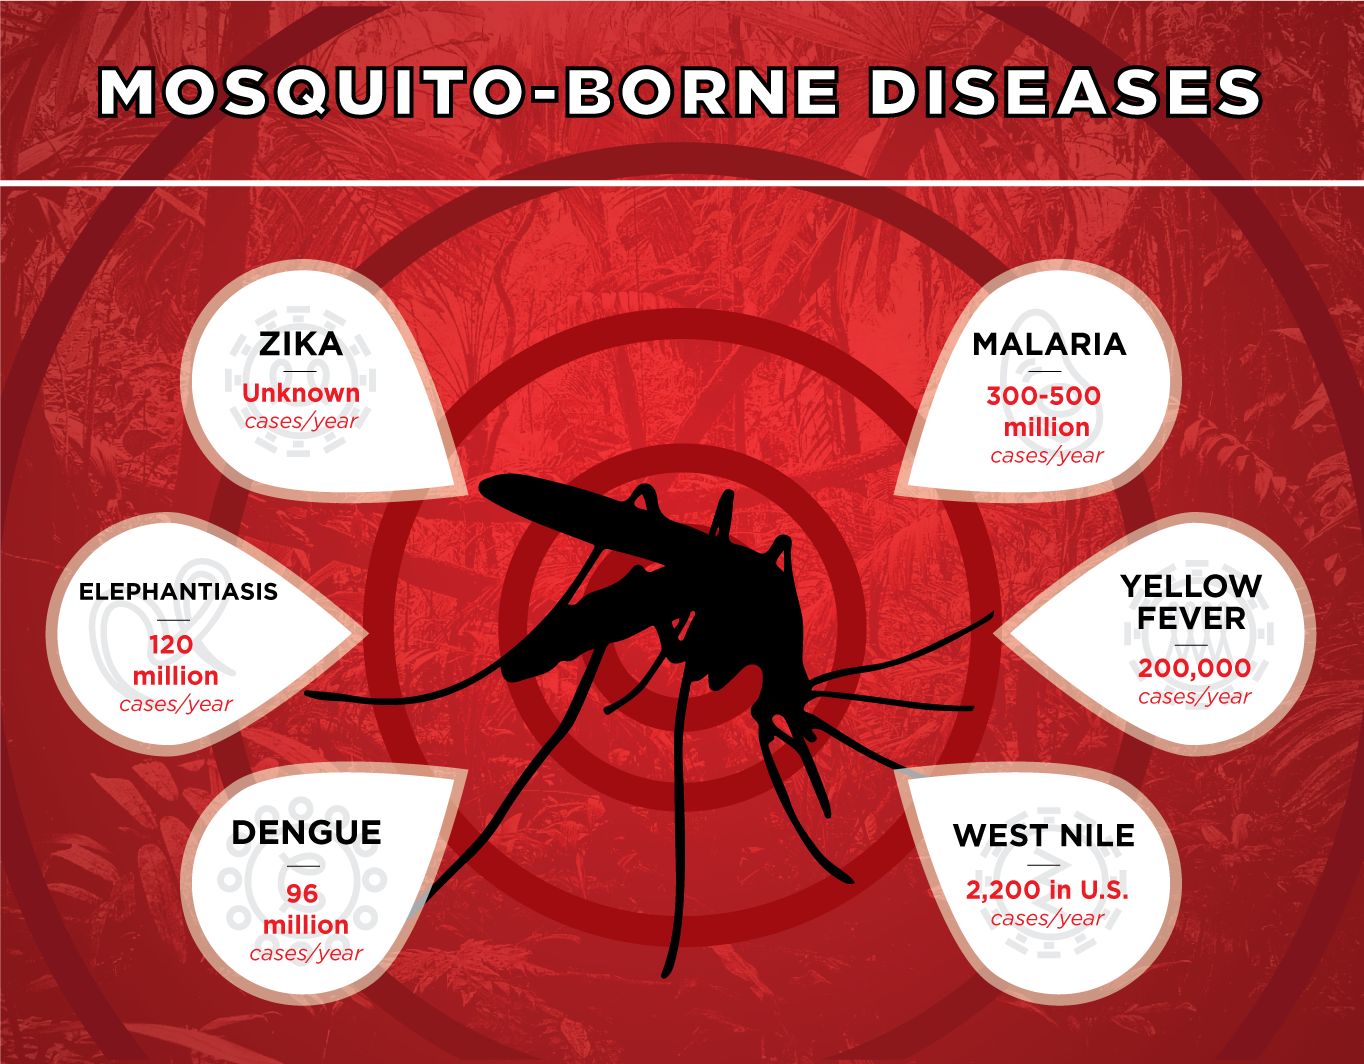  Various mosquito-borne diseases.